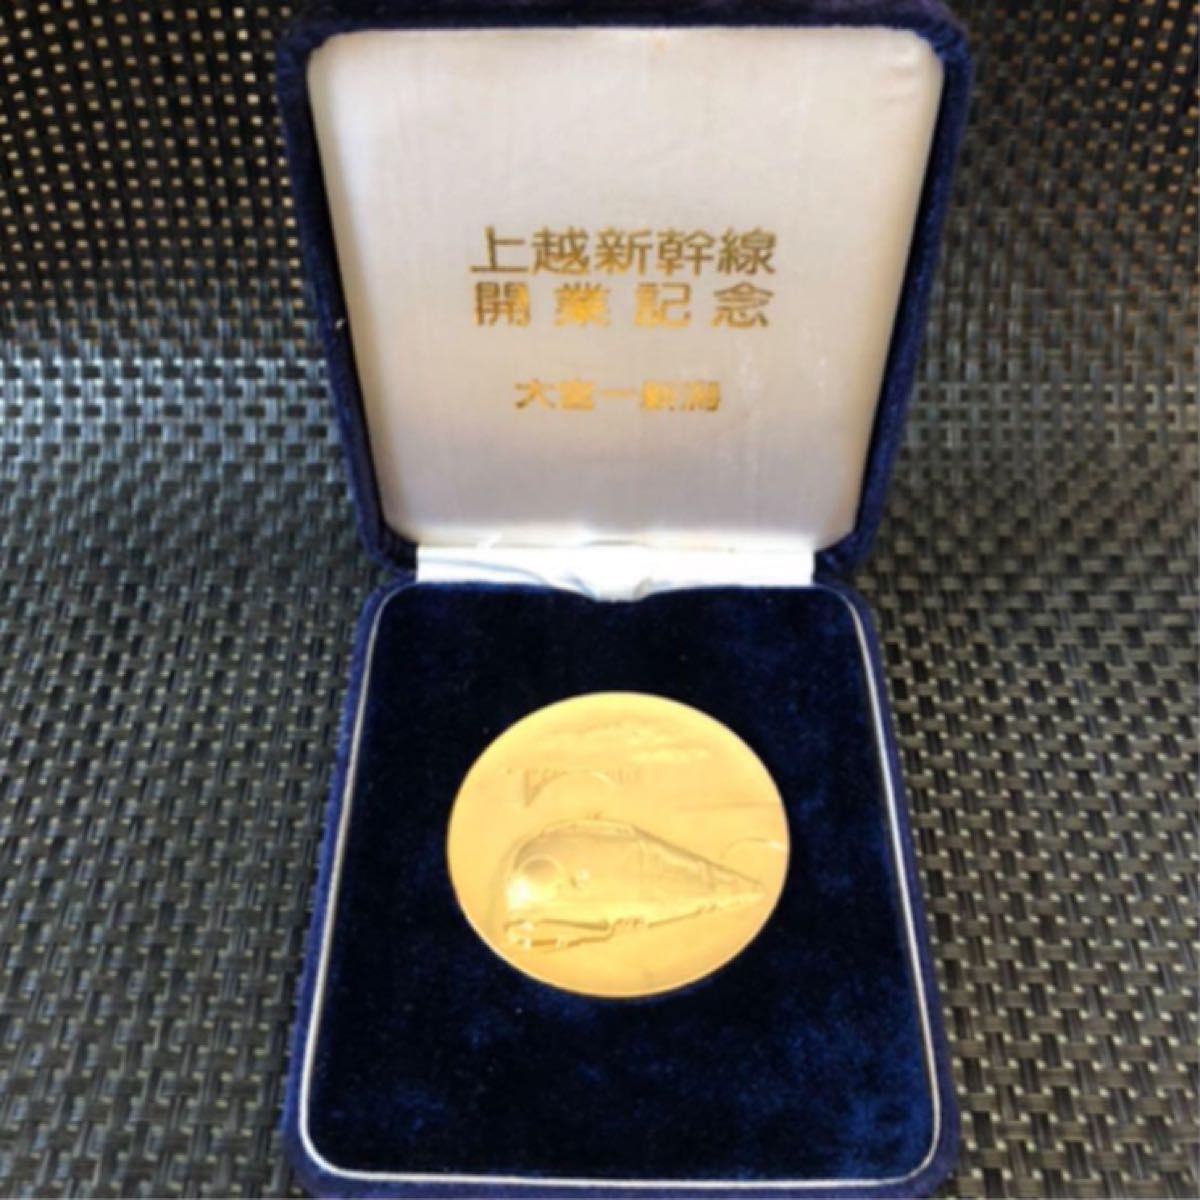 上越新幹線の開業記念メダル